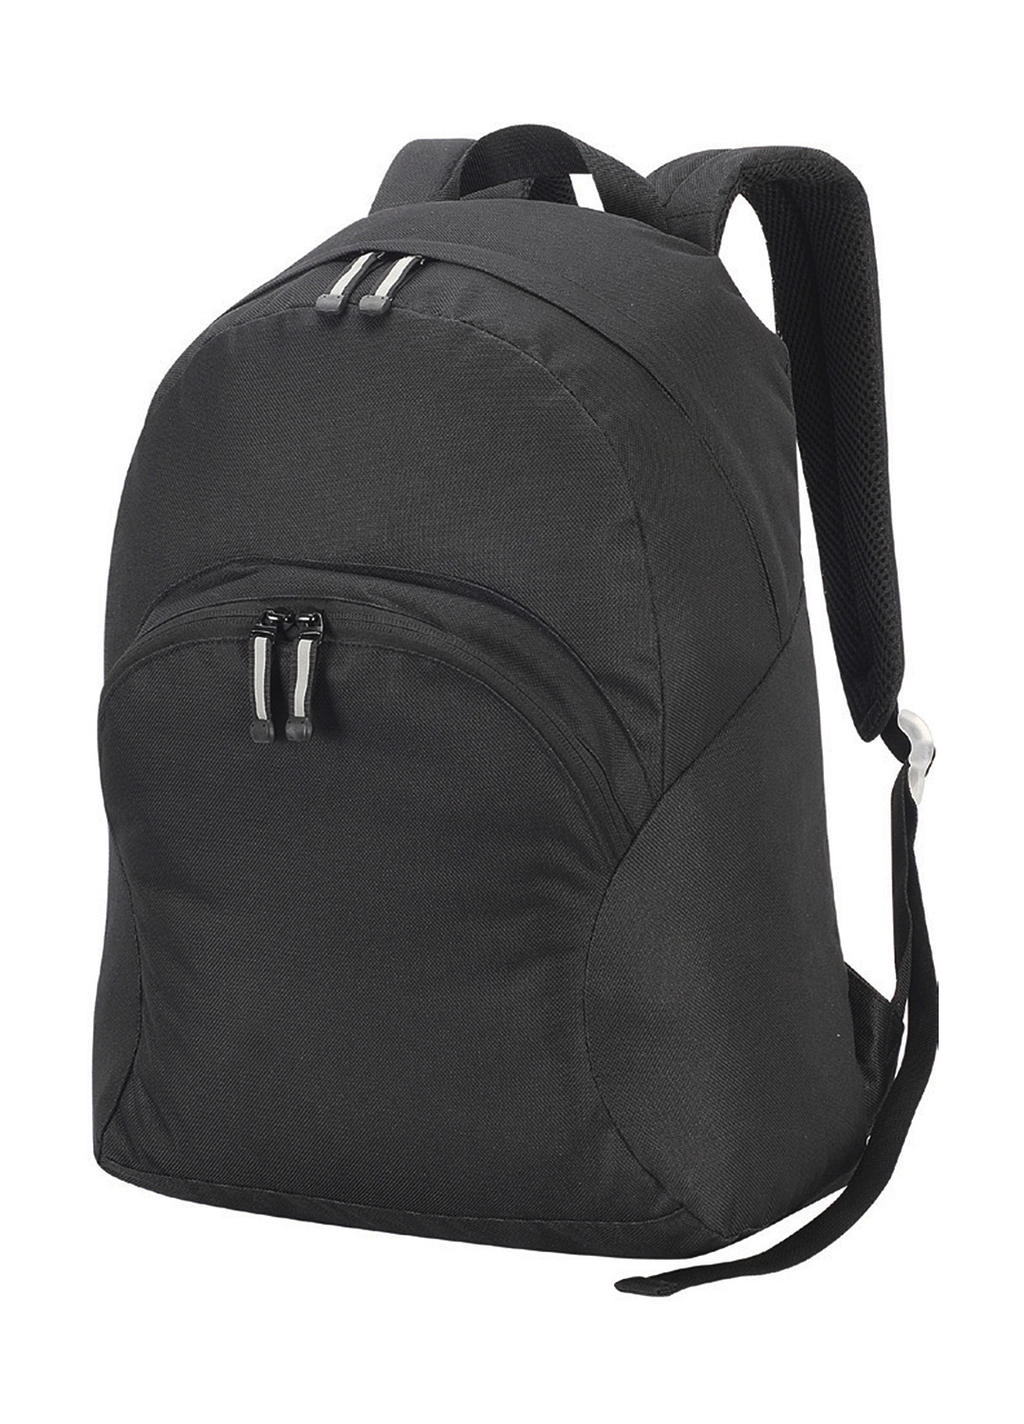 Milan Backpack zum Besticken und Bedrucken in der Farbe Black mit Ihren Logo, Schriftzug oder Motiv.